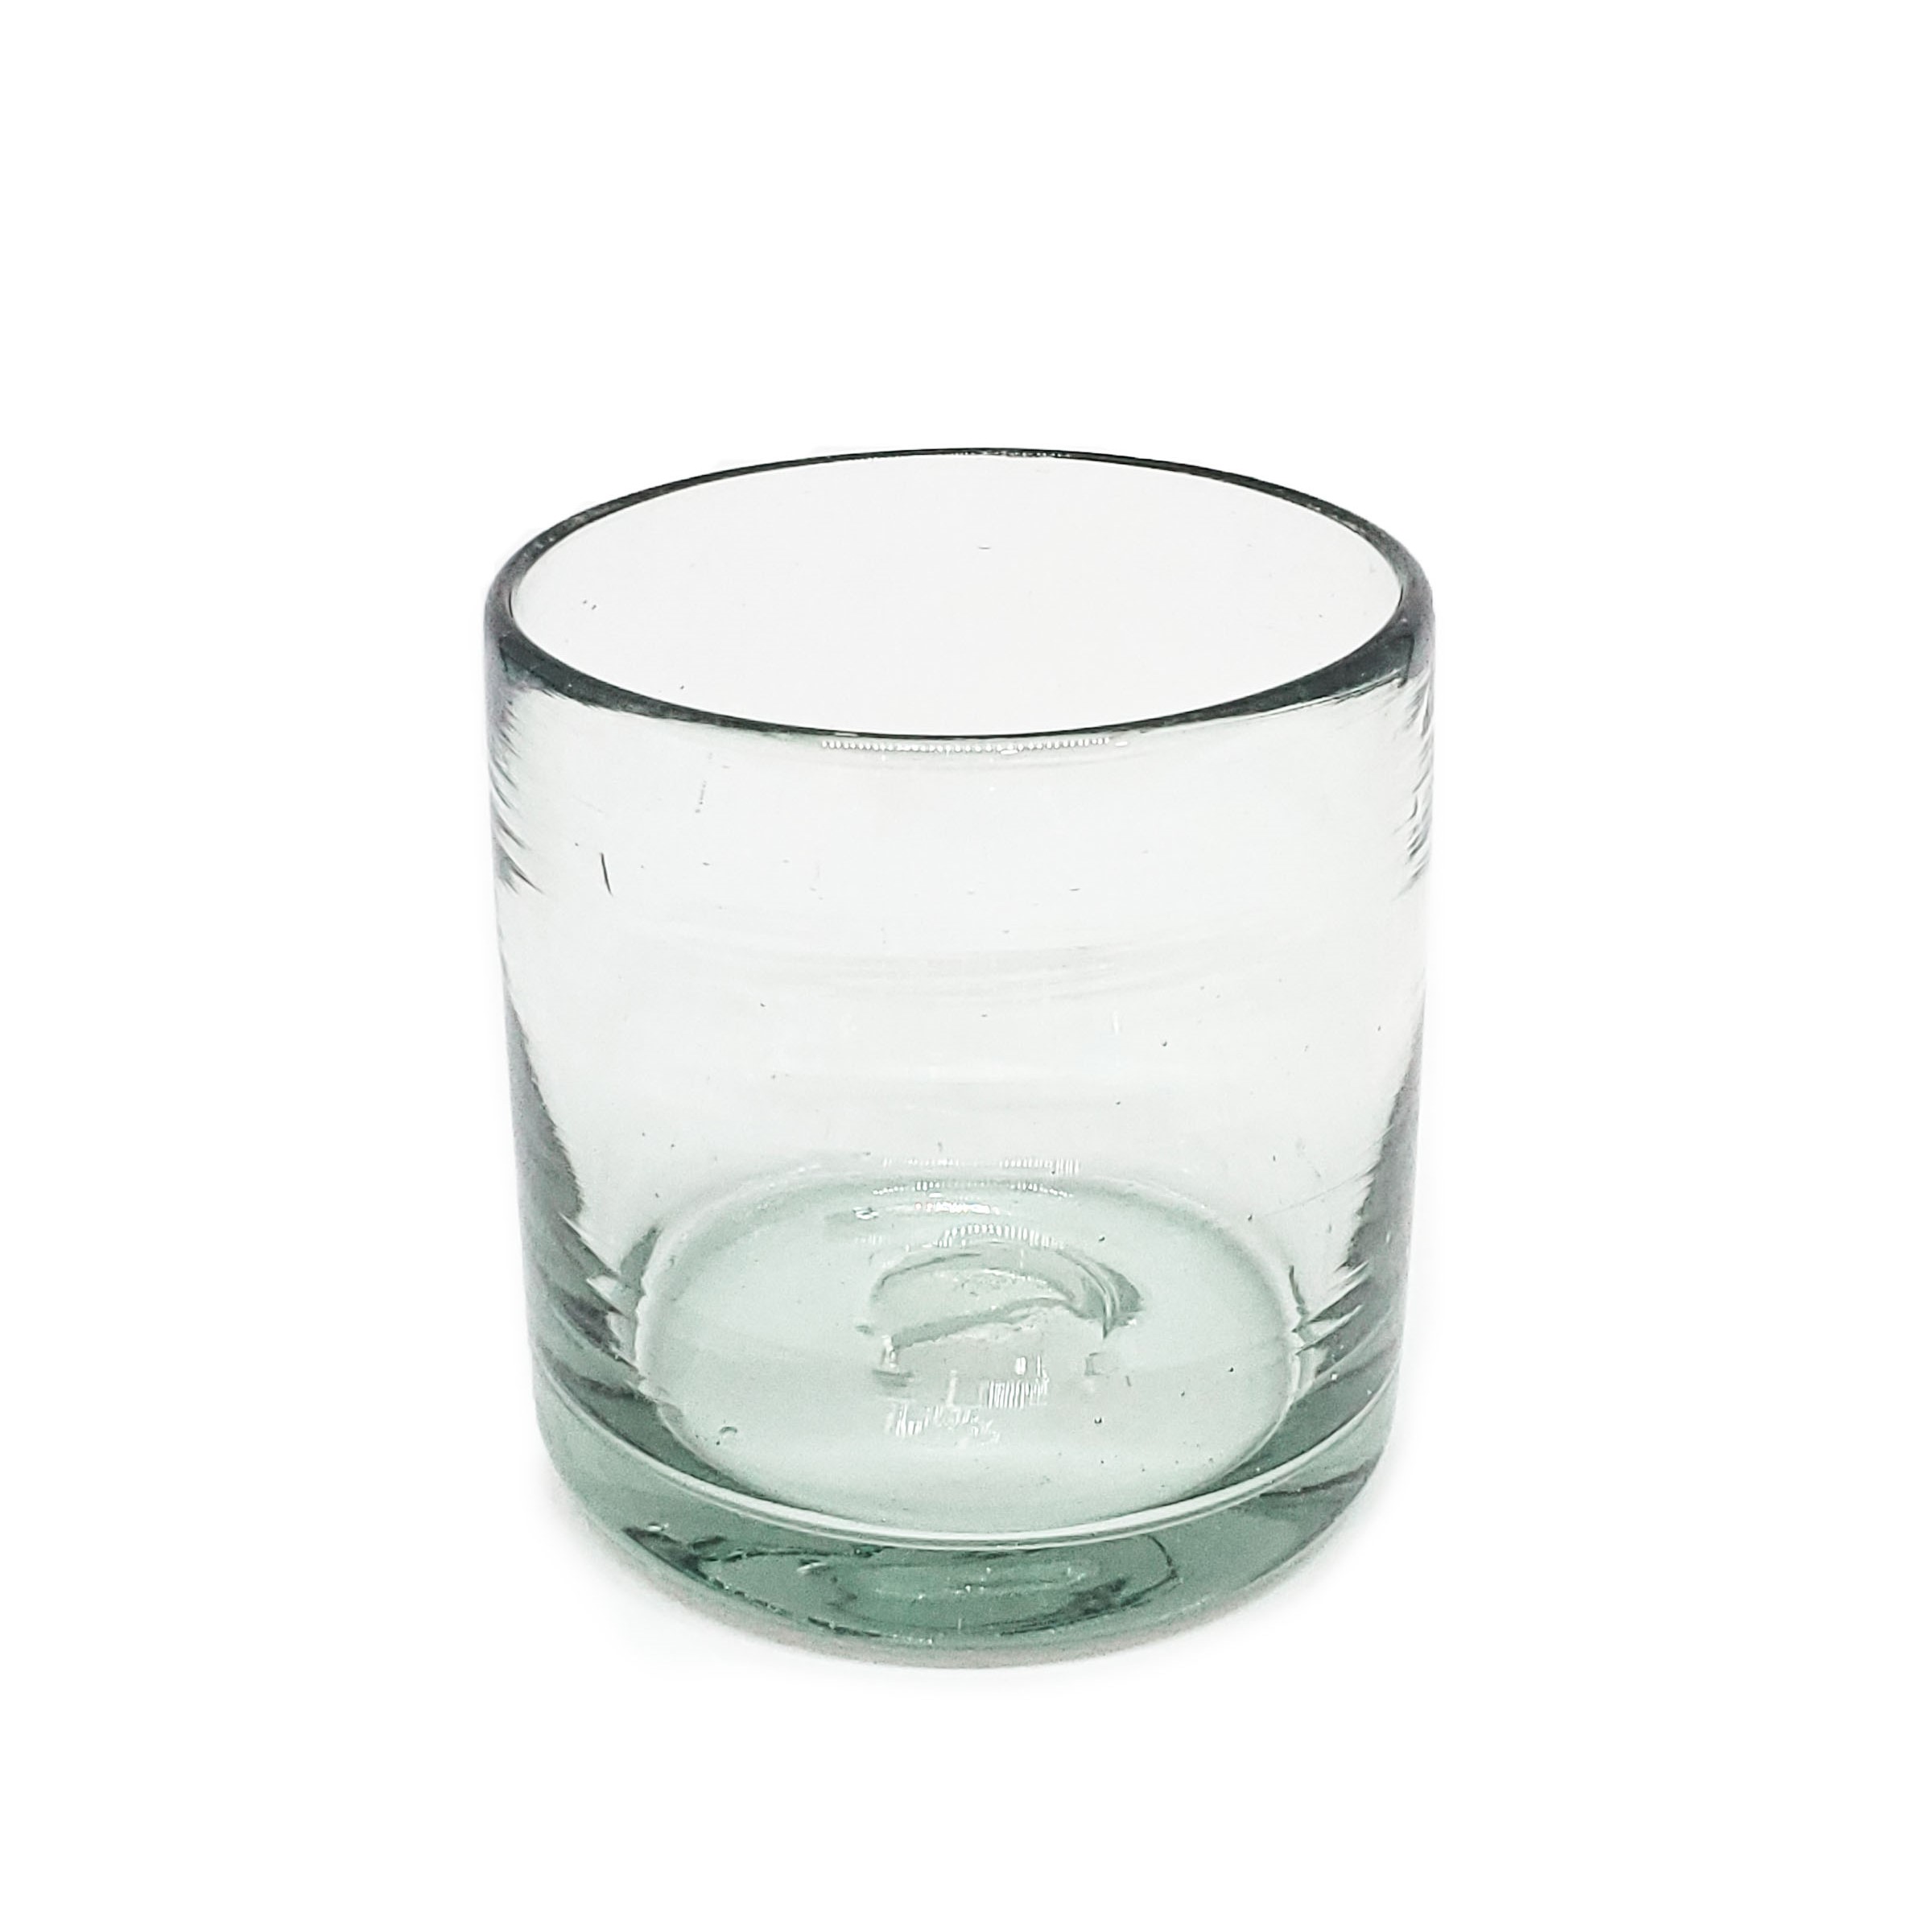 Novedades / Juego de 6 vasos DOF 8oz Transparentes / �stos artesanales vasos le dar�n un toque cl�sico a su bebida favorita.